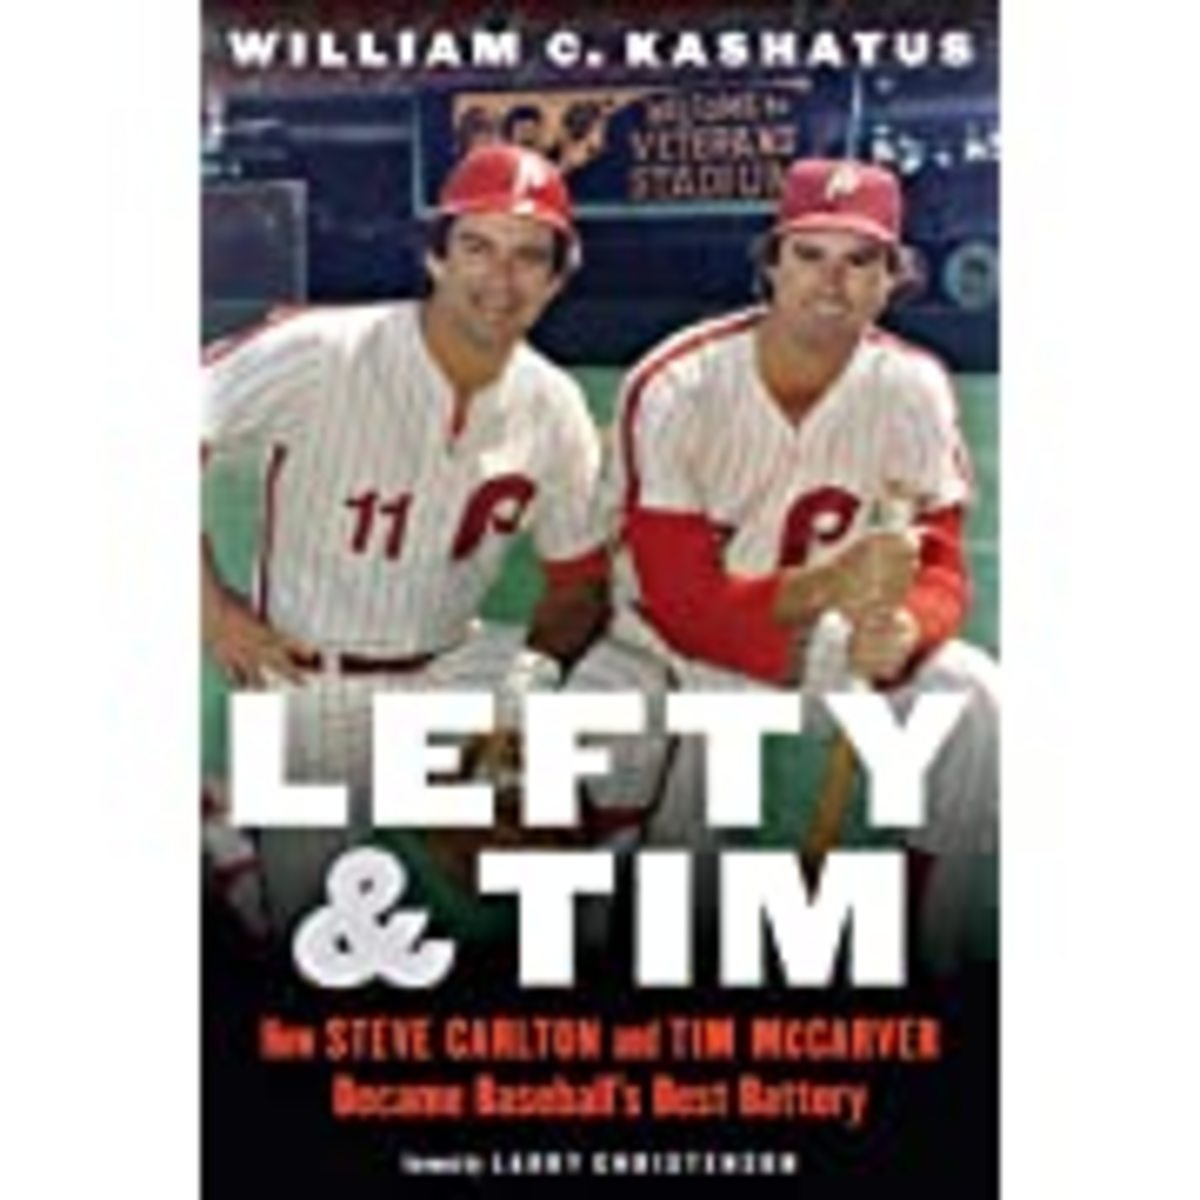 Lefty & Tim: How Steve Carlton and Tim McCarver Became Baseball’s Best Battery.